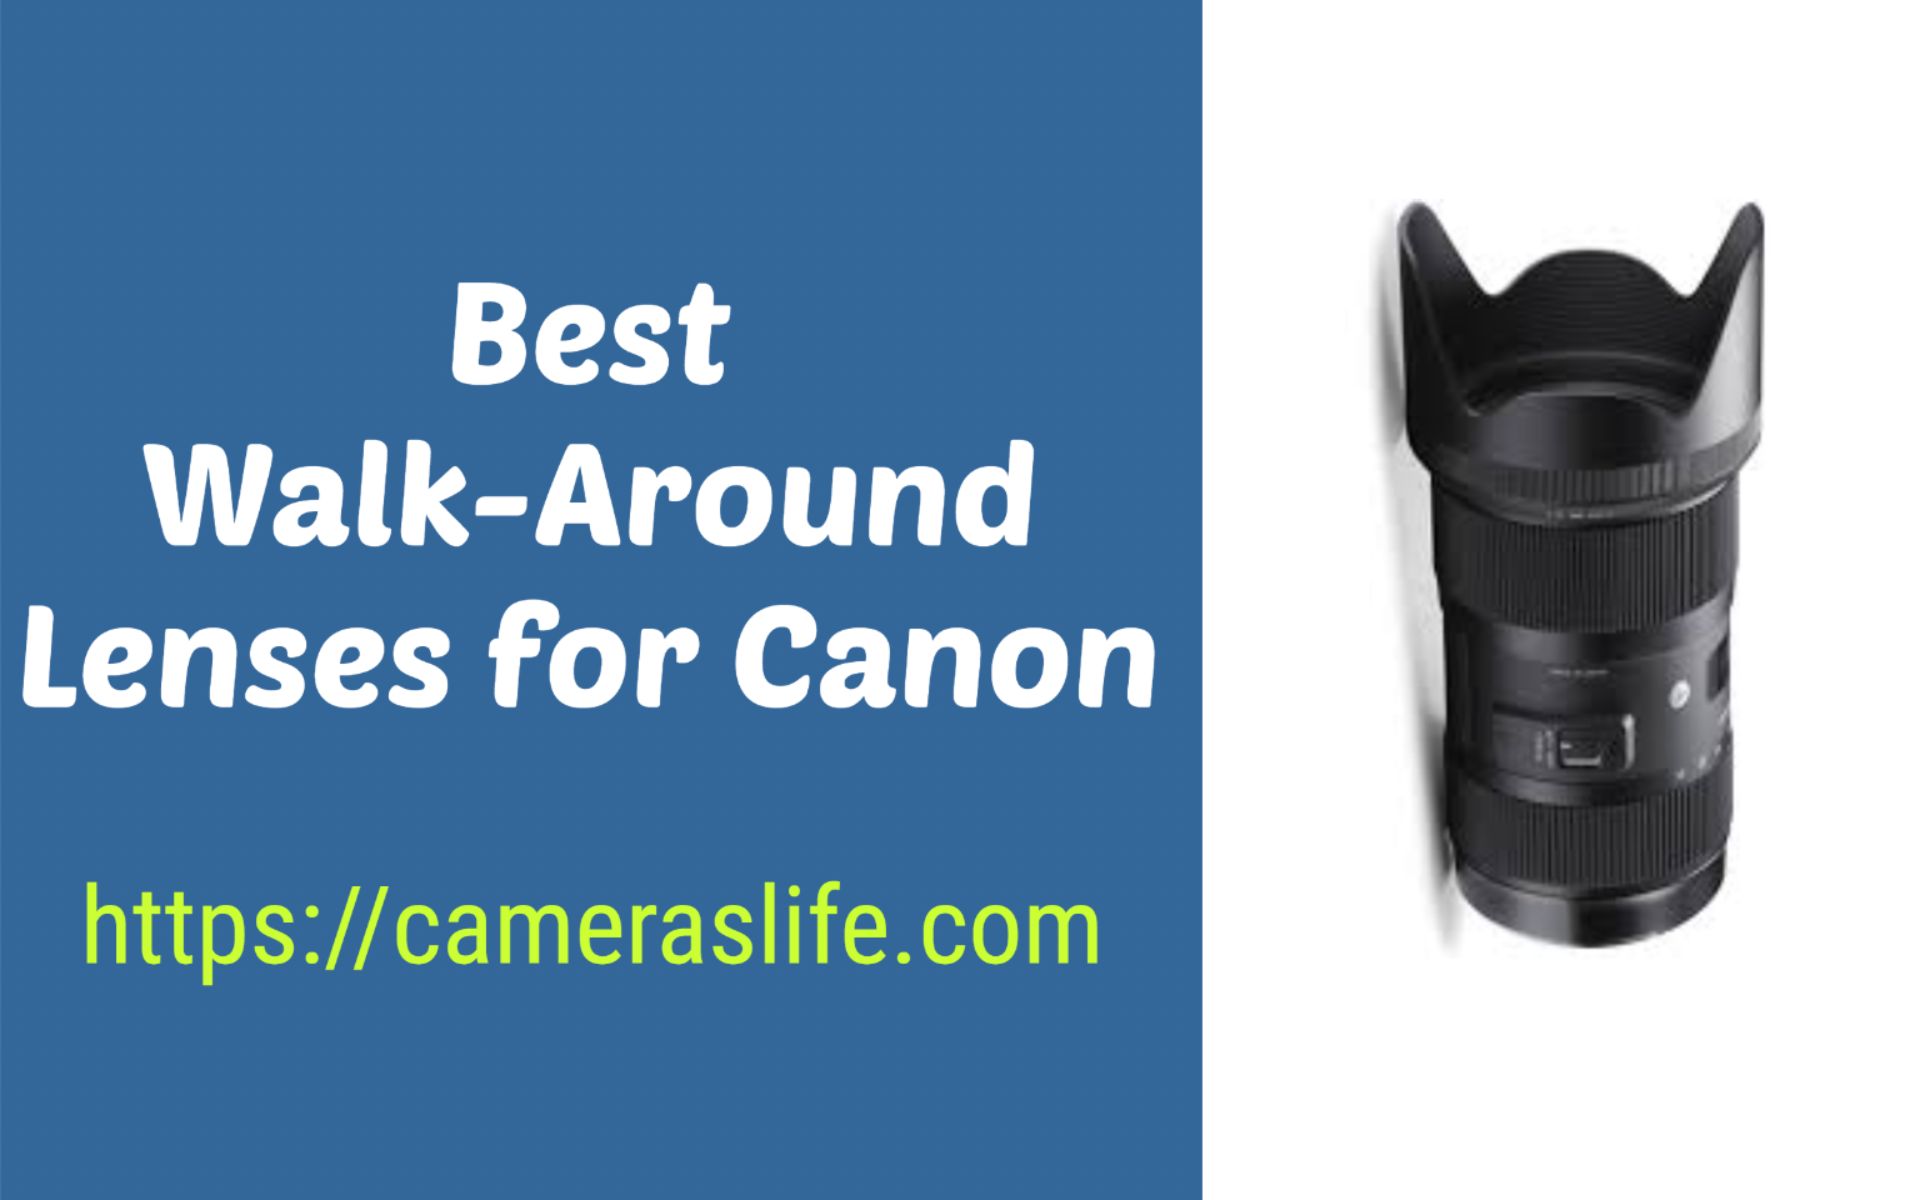 Best Walk-Around Lenses for Canon